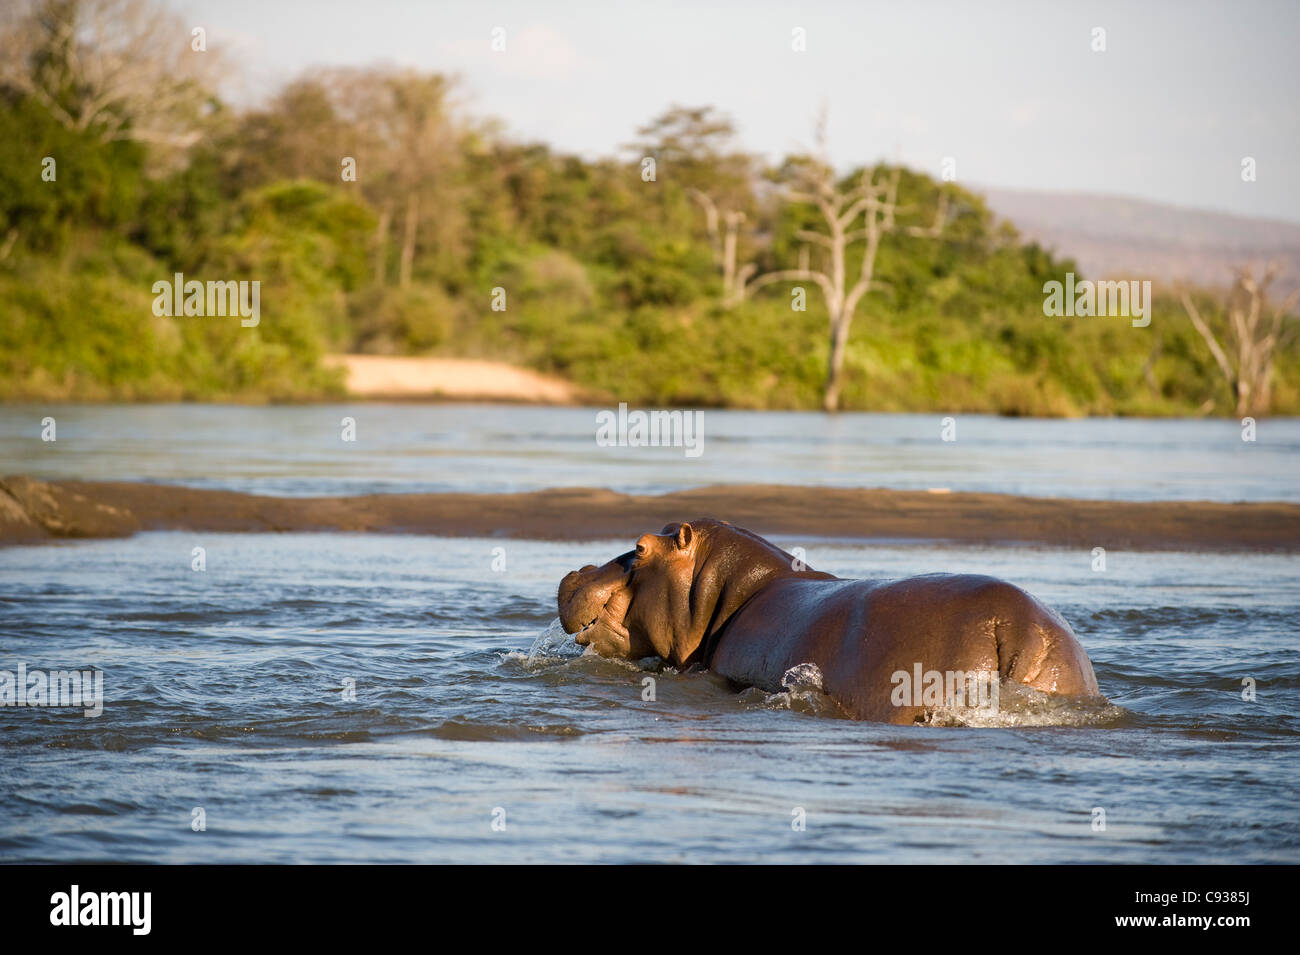 Malawi, Majete Wildlife Reserve. Ein Nilpferd kreuzt eine schmale Sandbank in der Shire-Fluss. Stockfoto